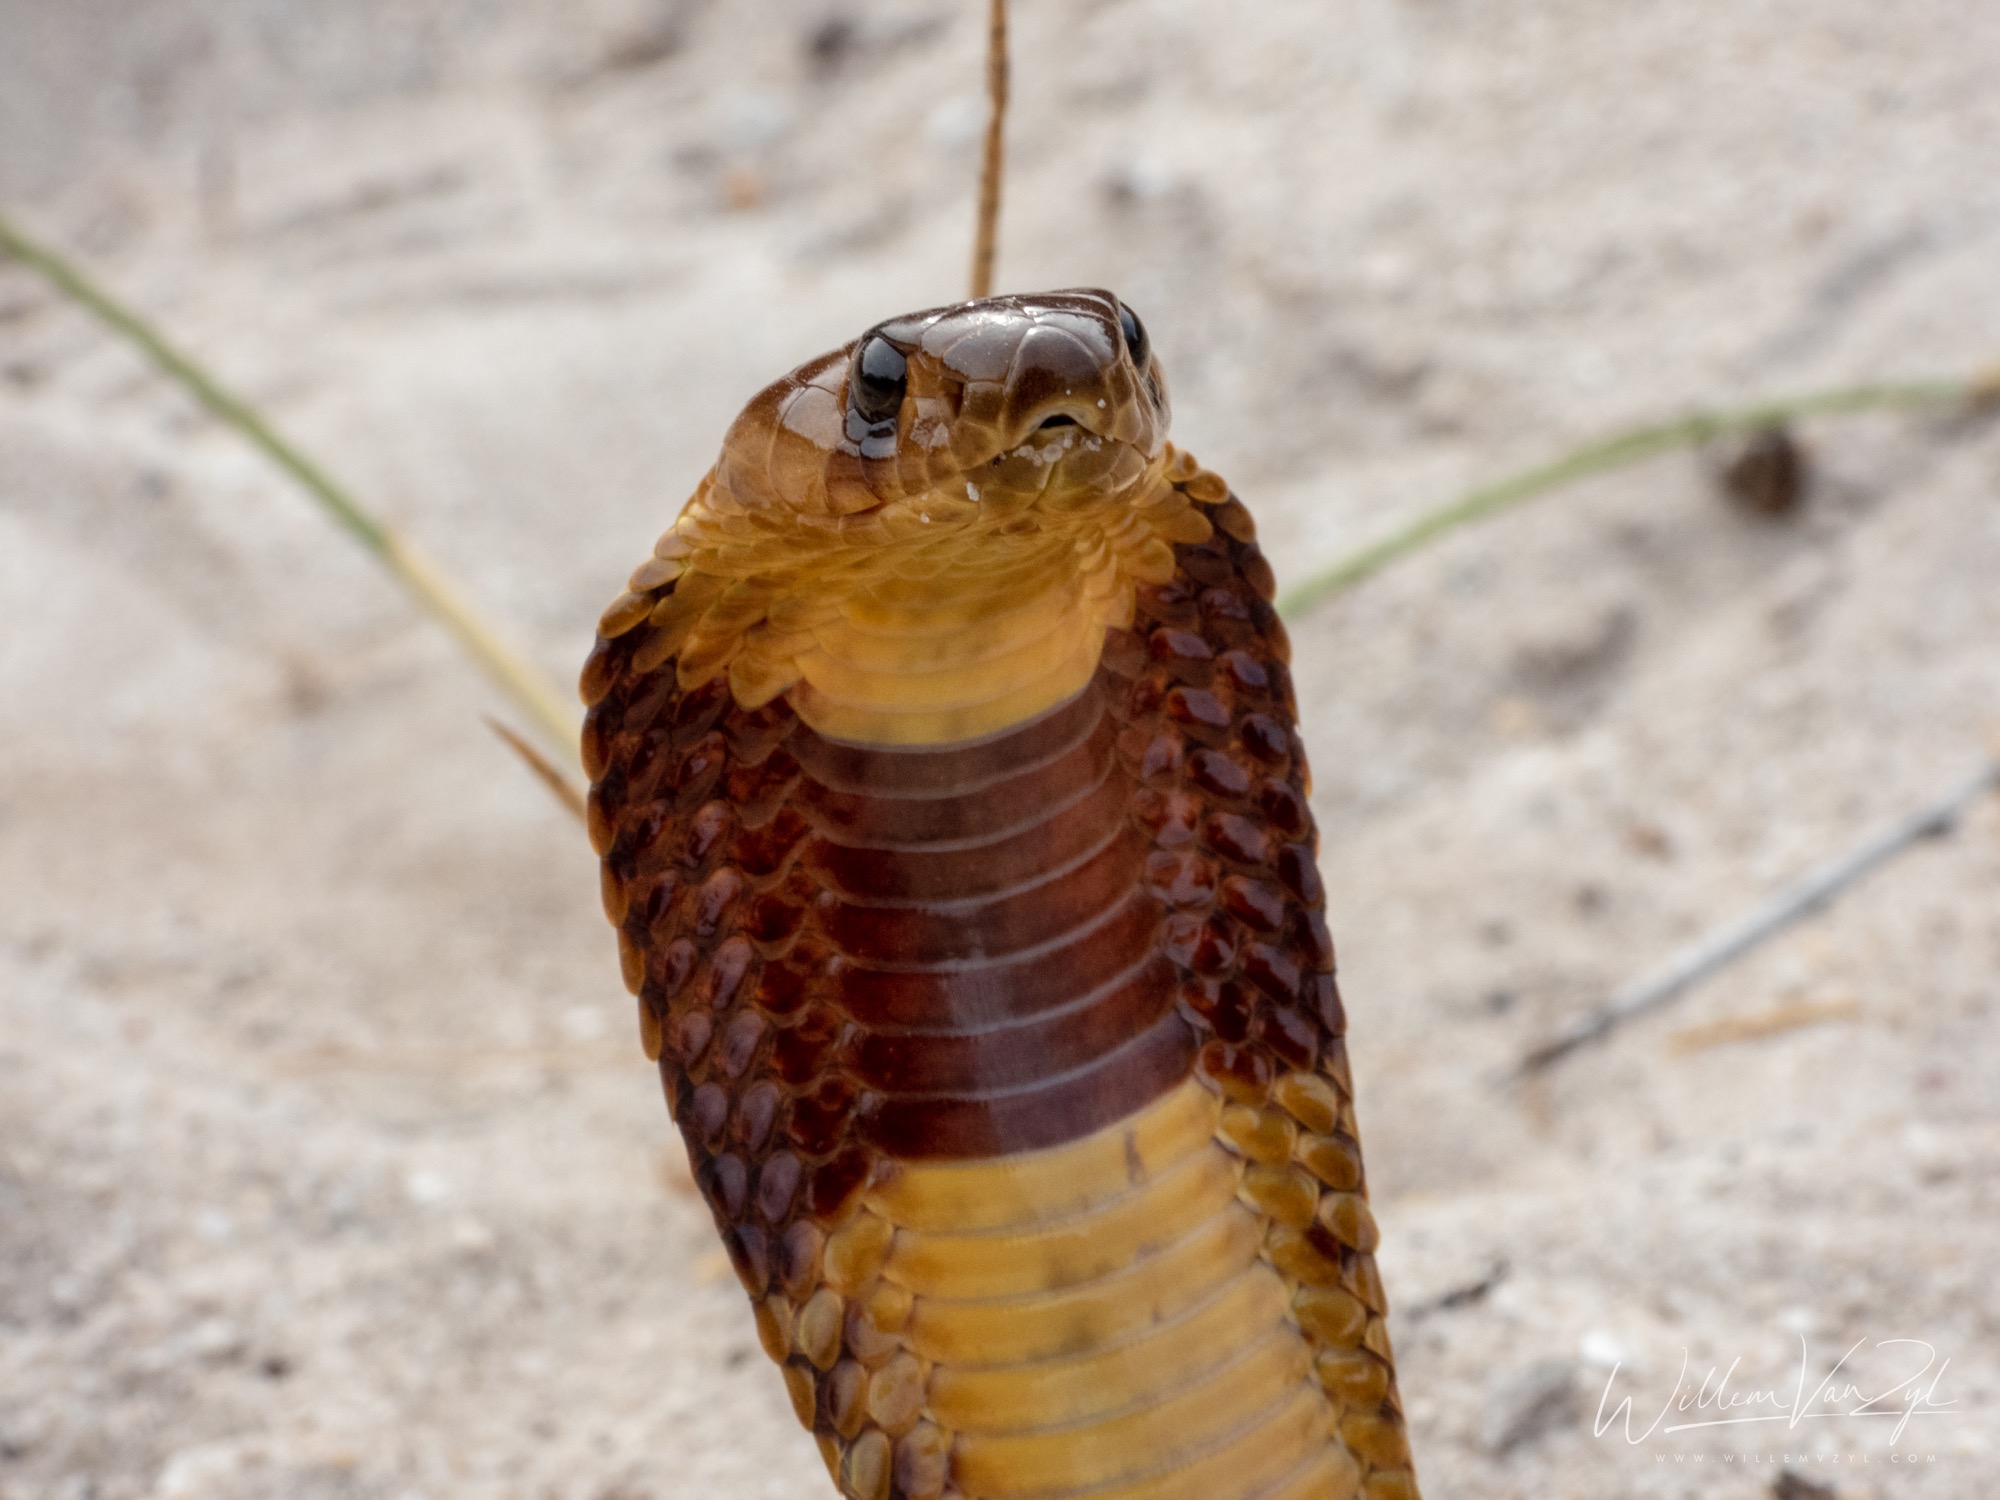 Cape Cobra (Naja nivea)